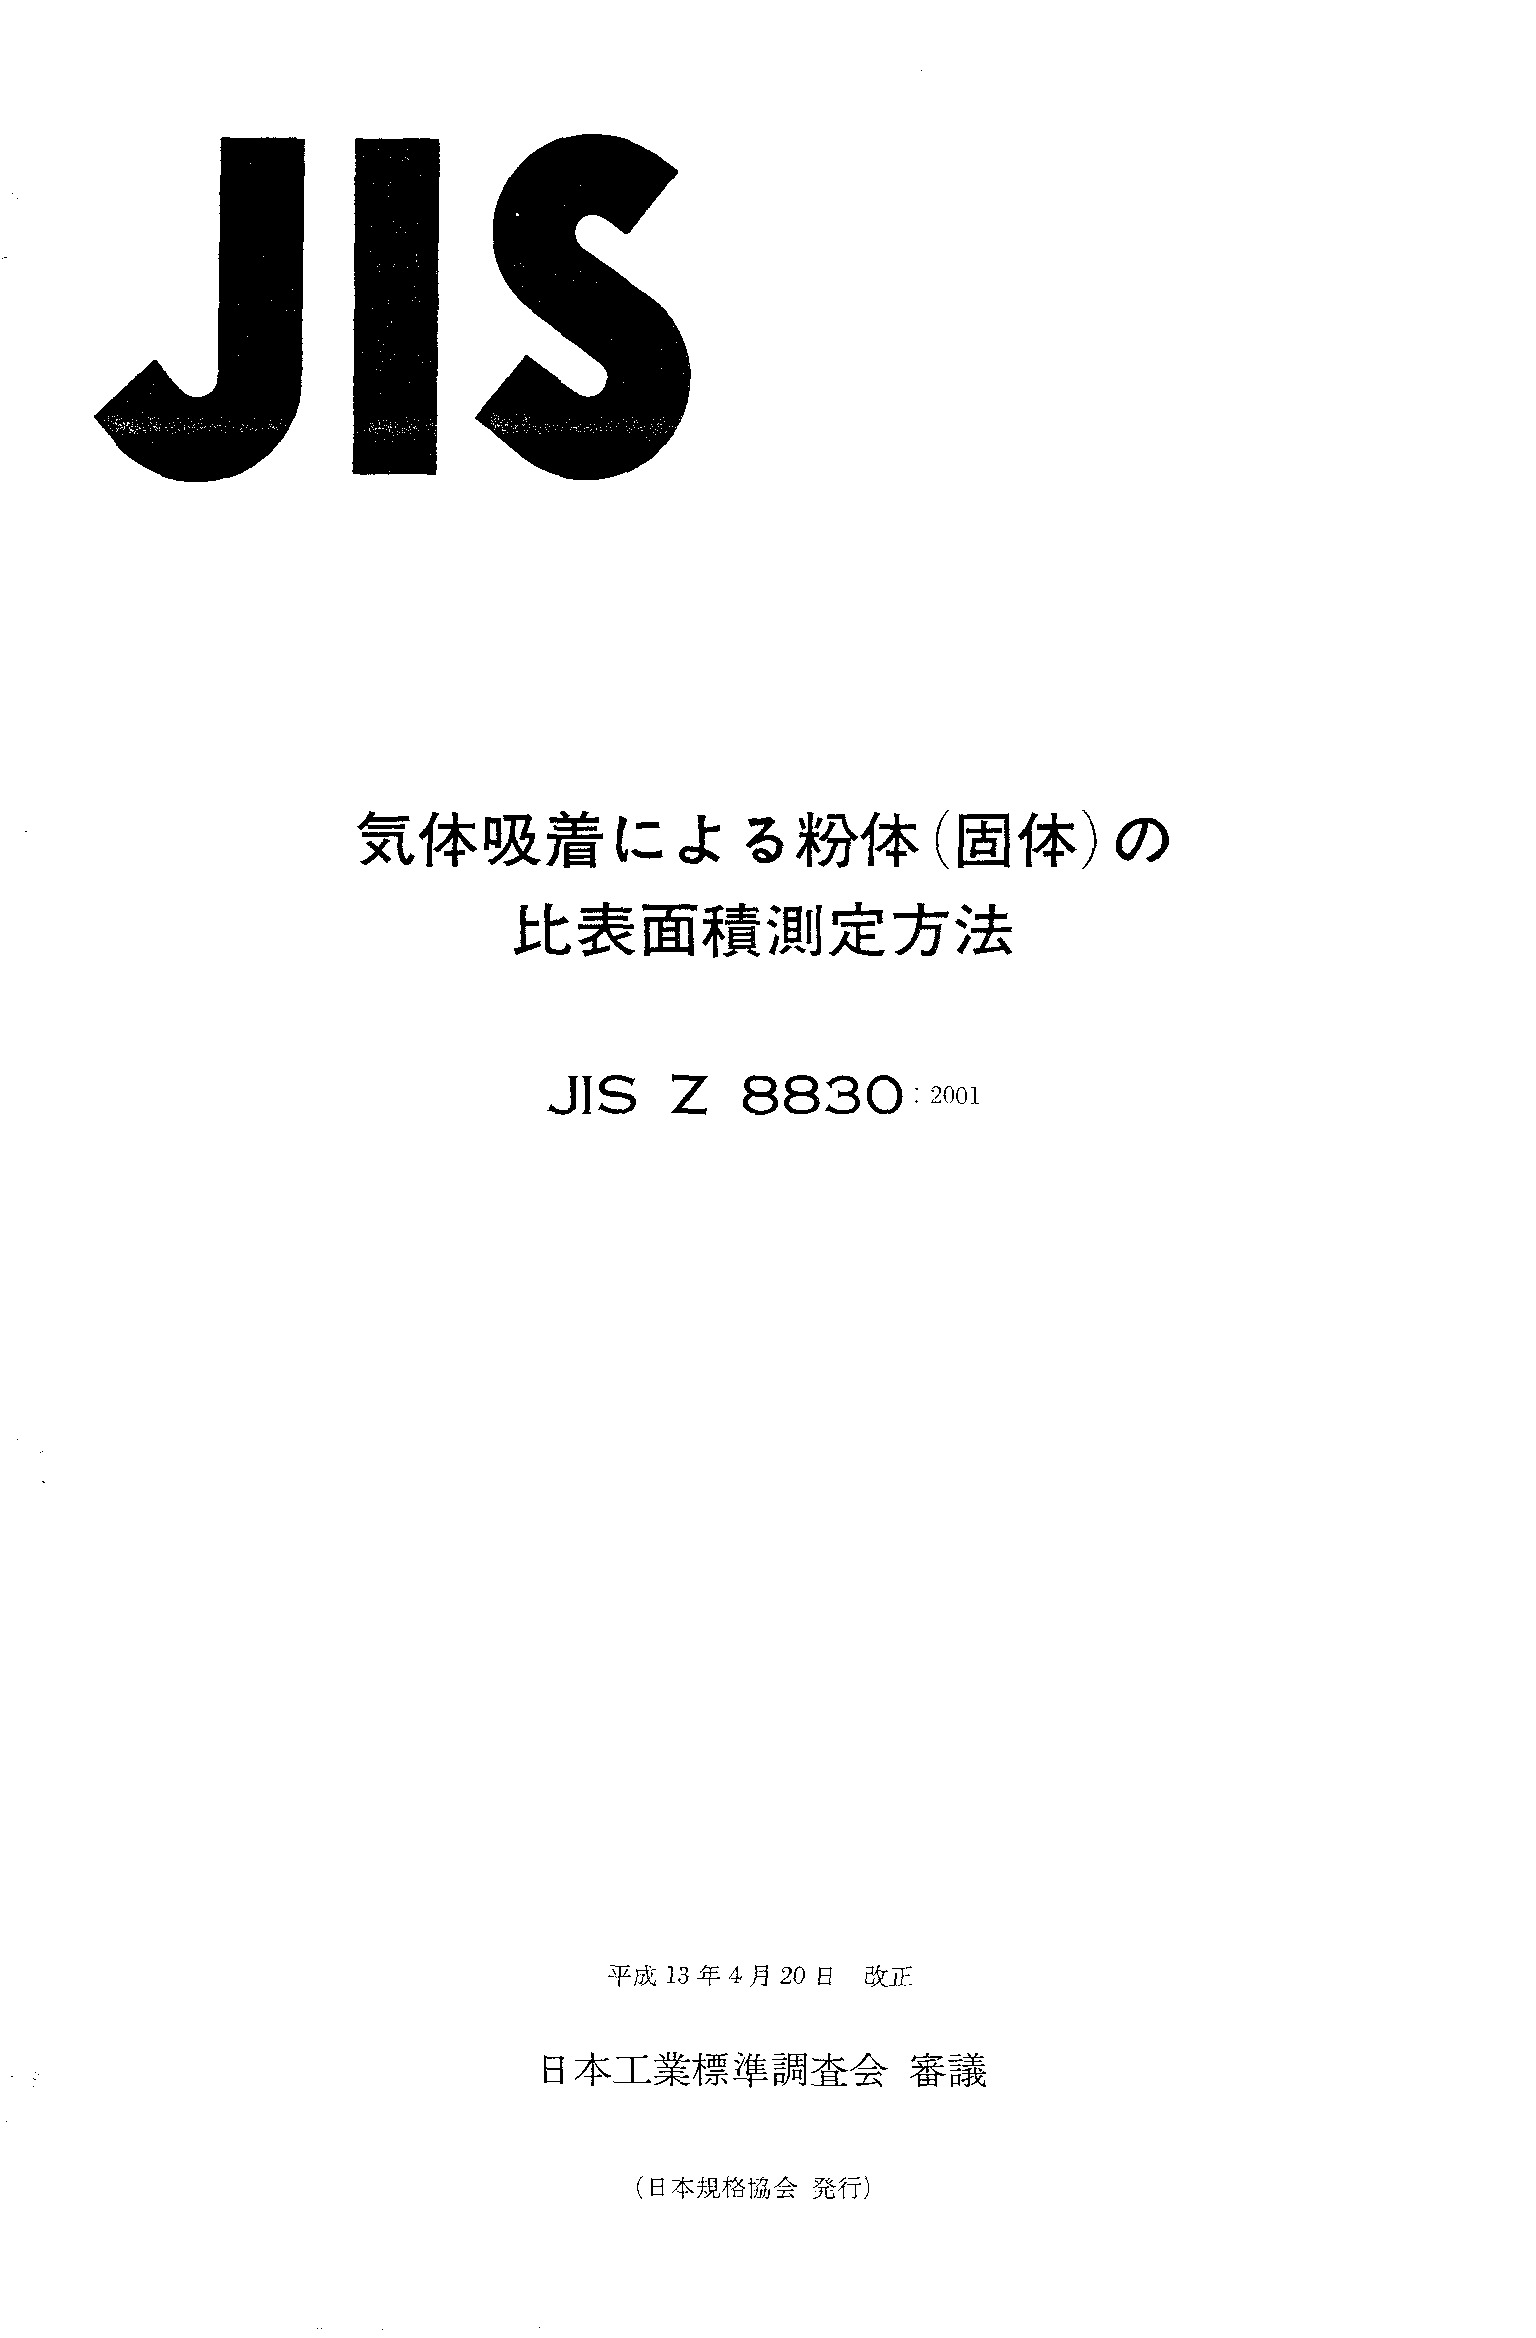 JIS Z 8830:2001